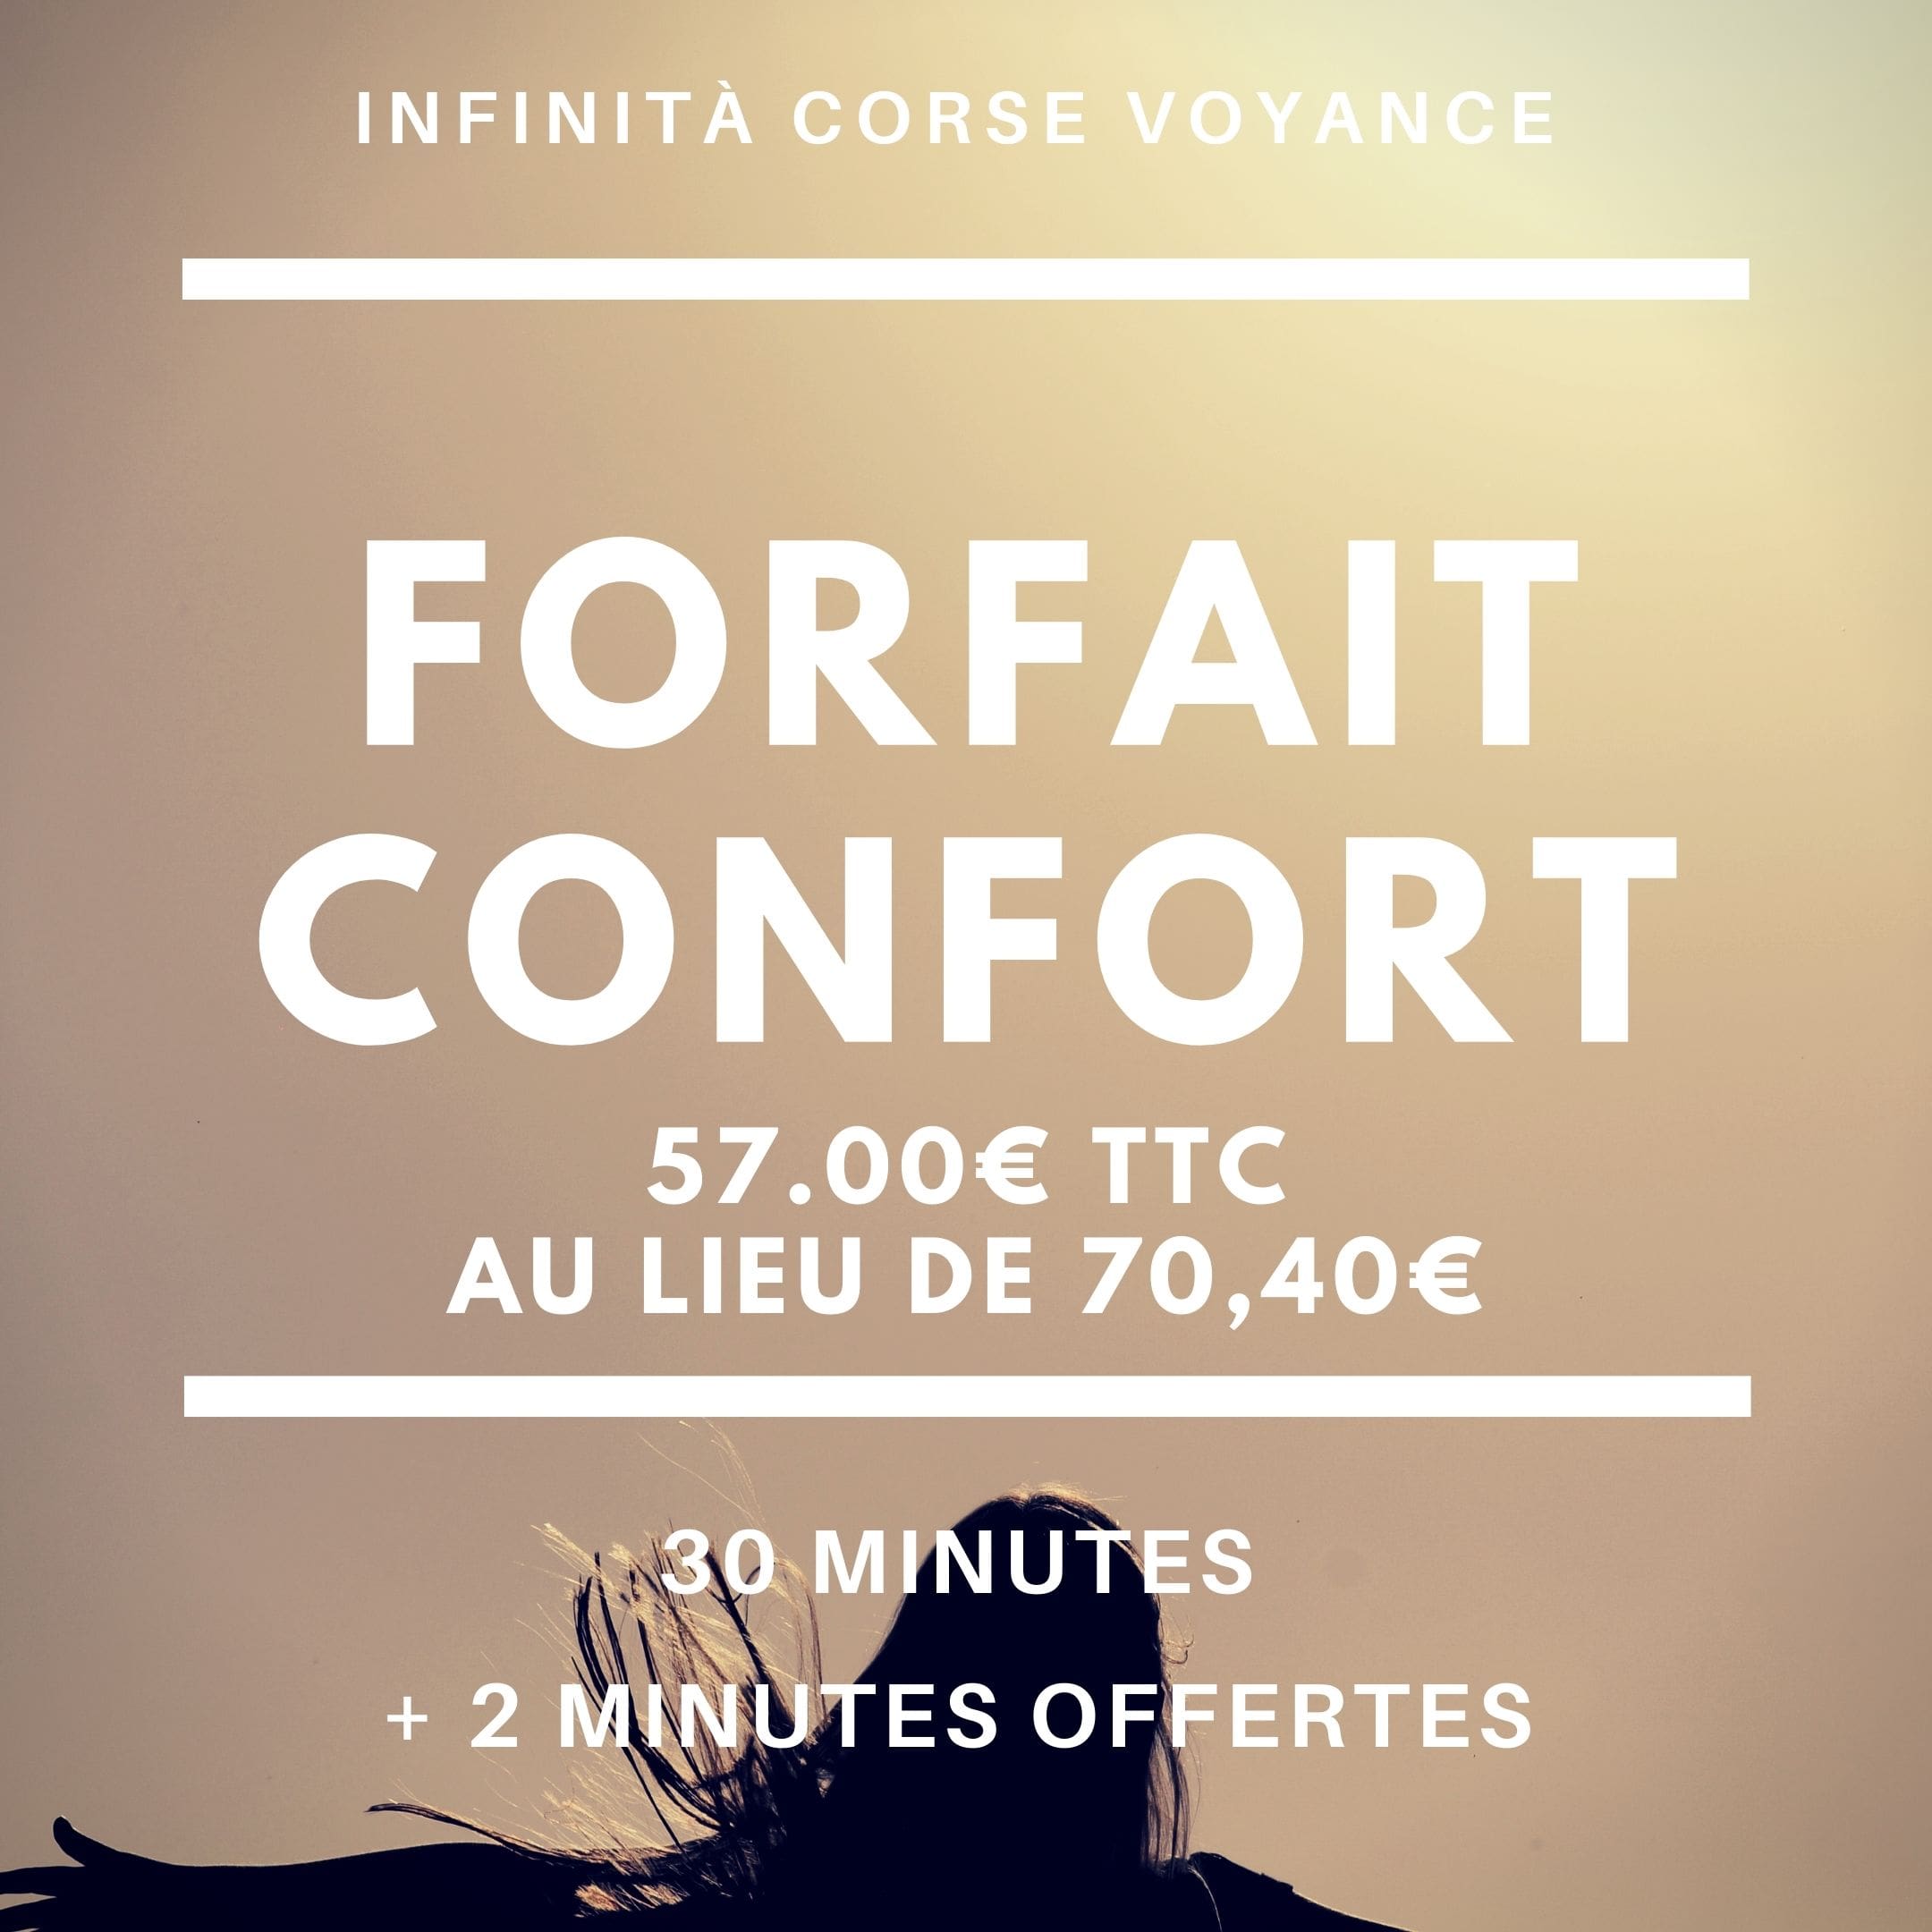 Forfait Confort / Infinità Corse Voyance